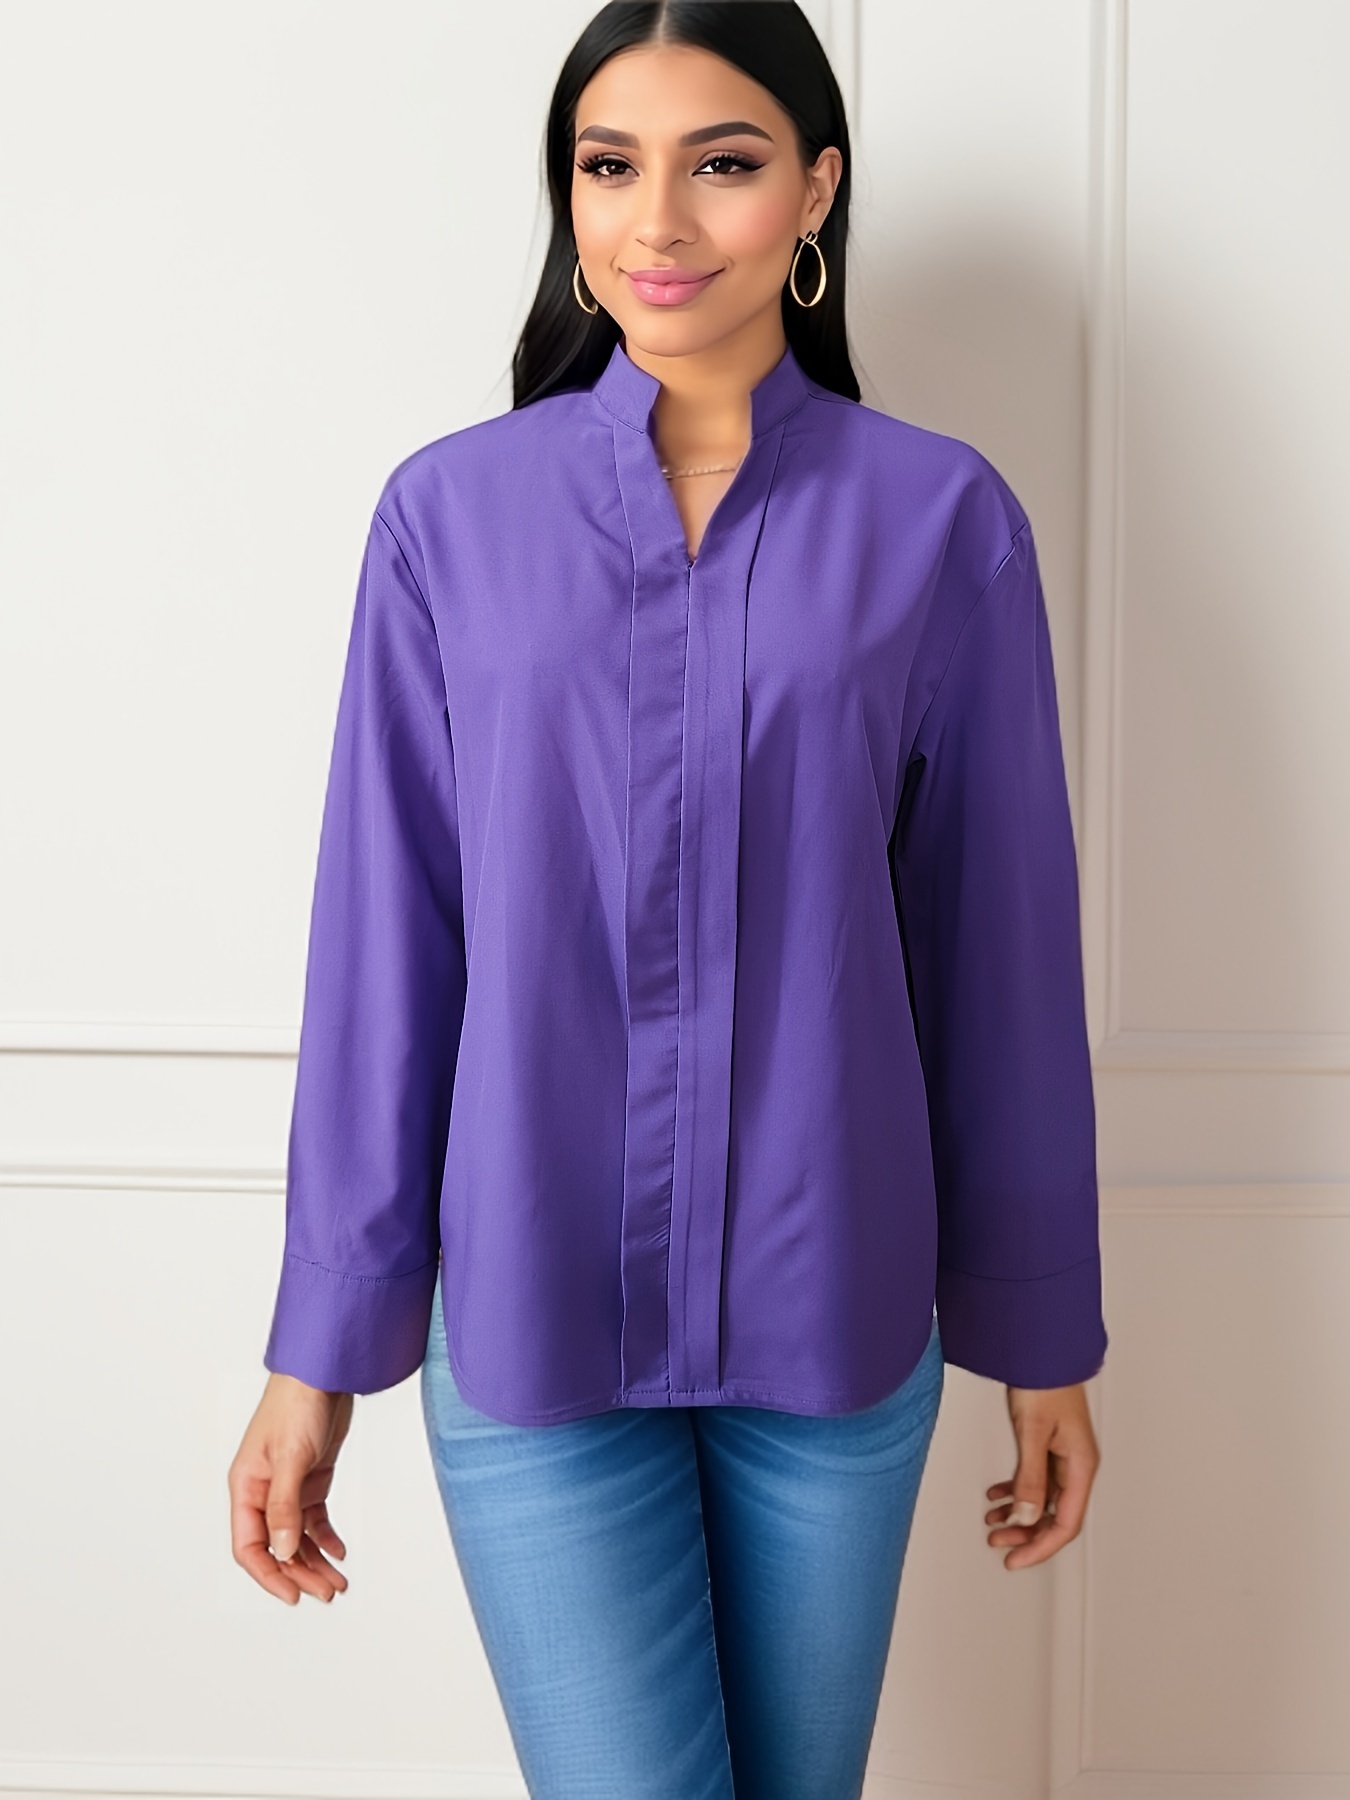 Women's Purple Blouses & Tops - Shop Online Now